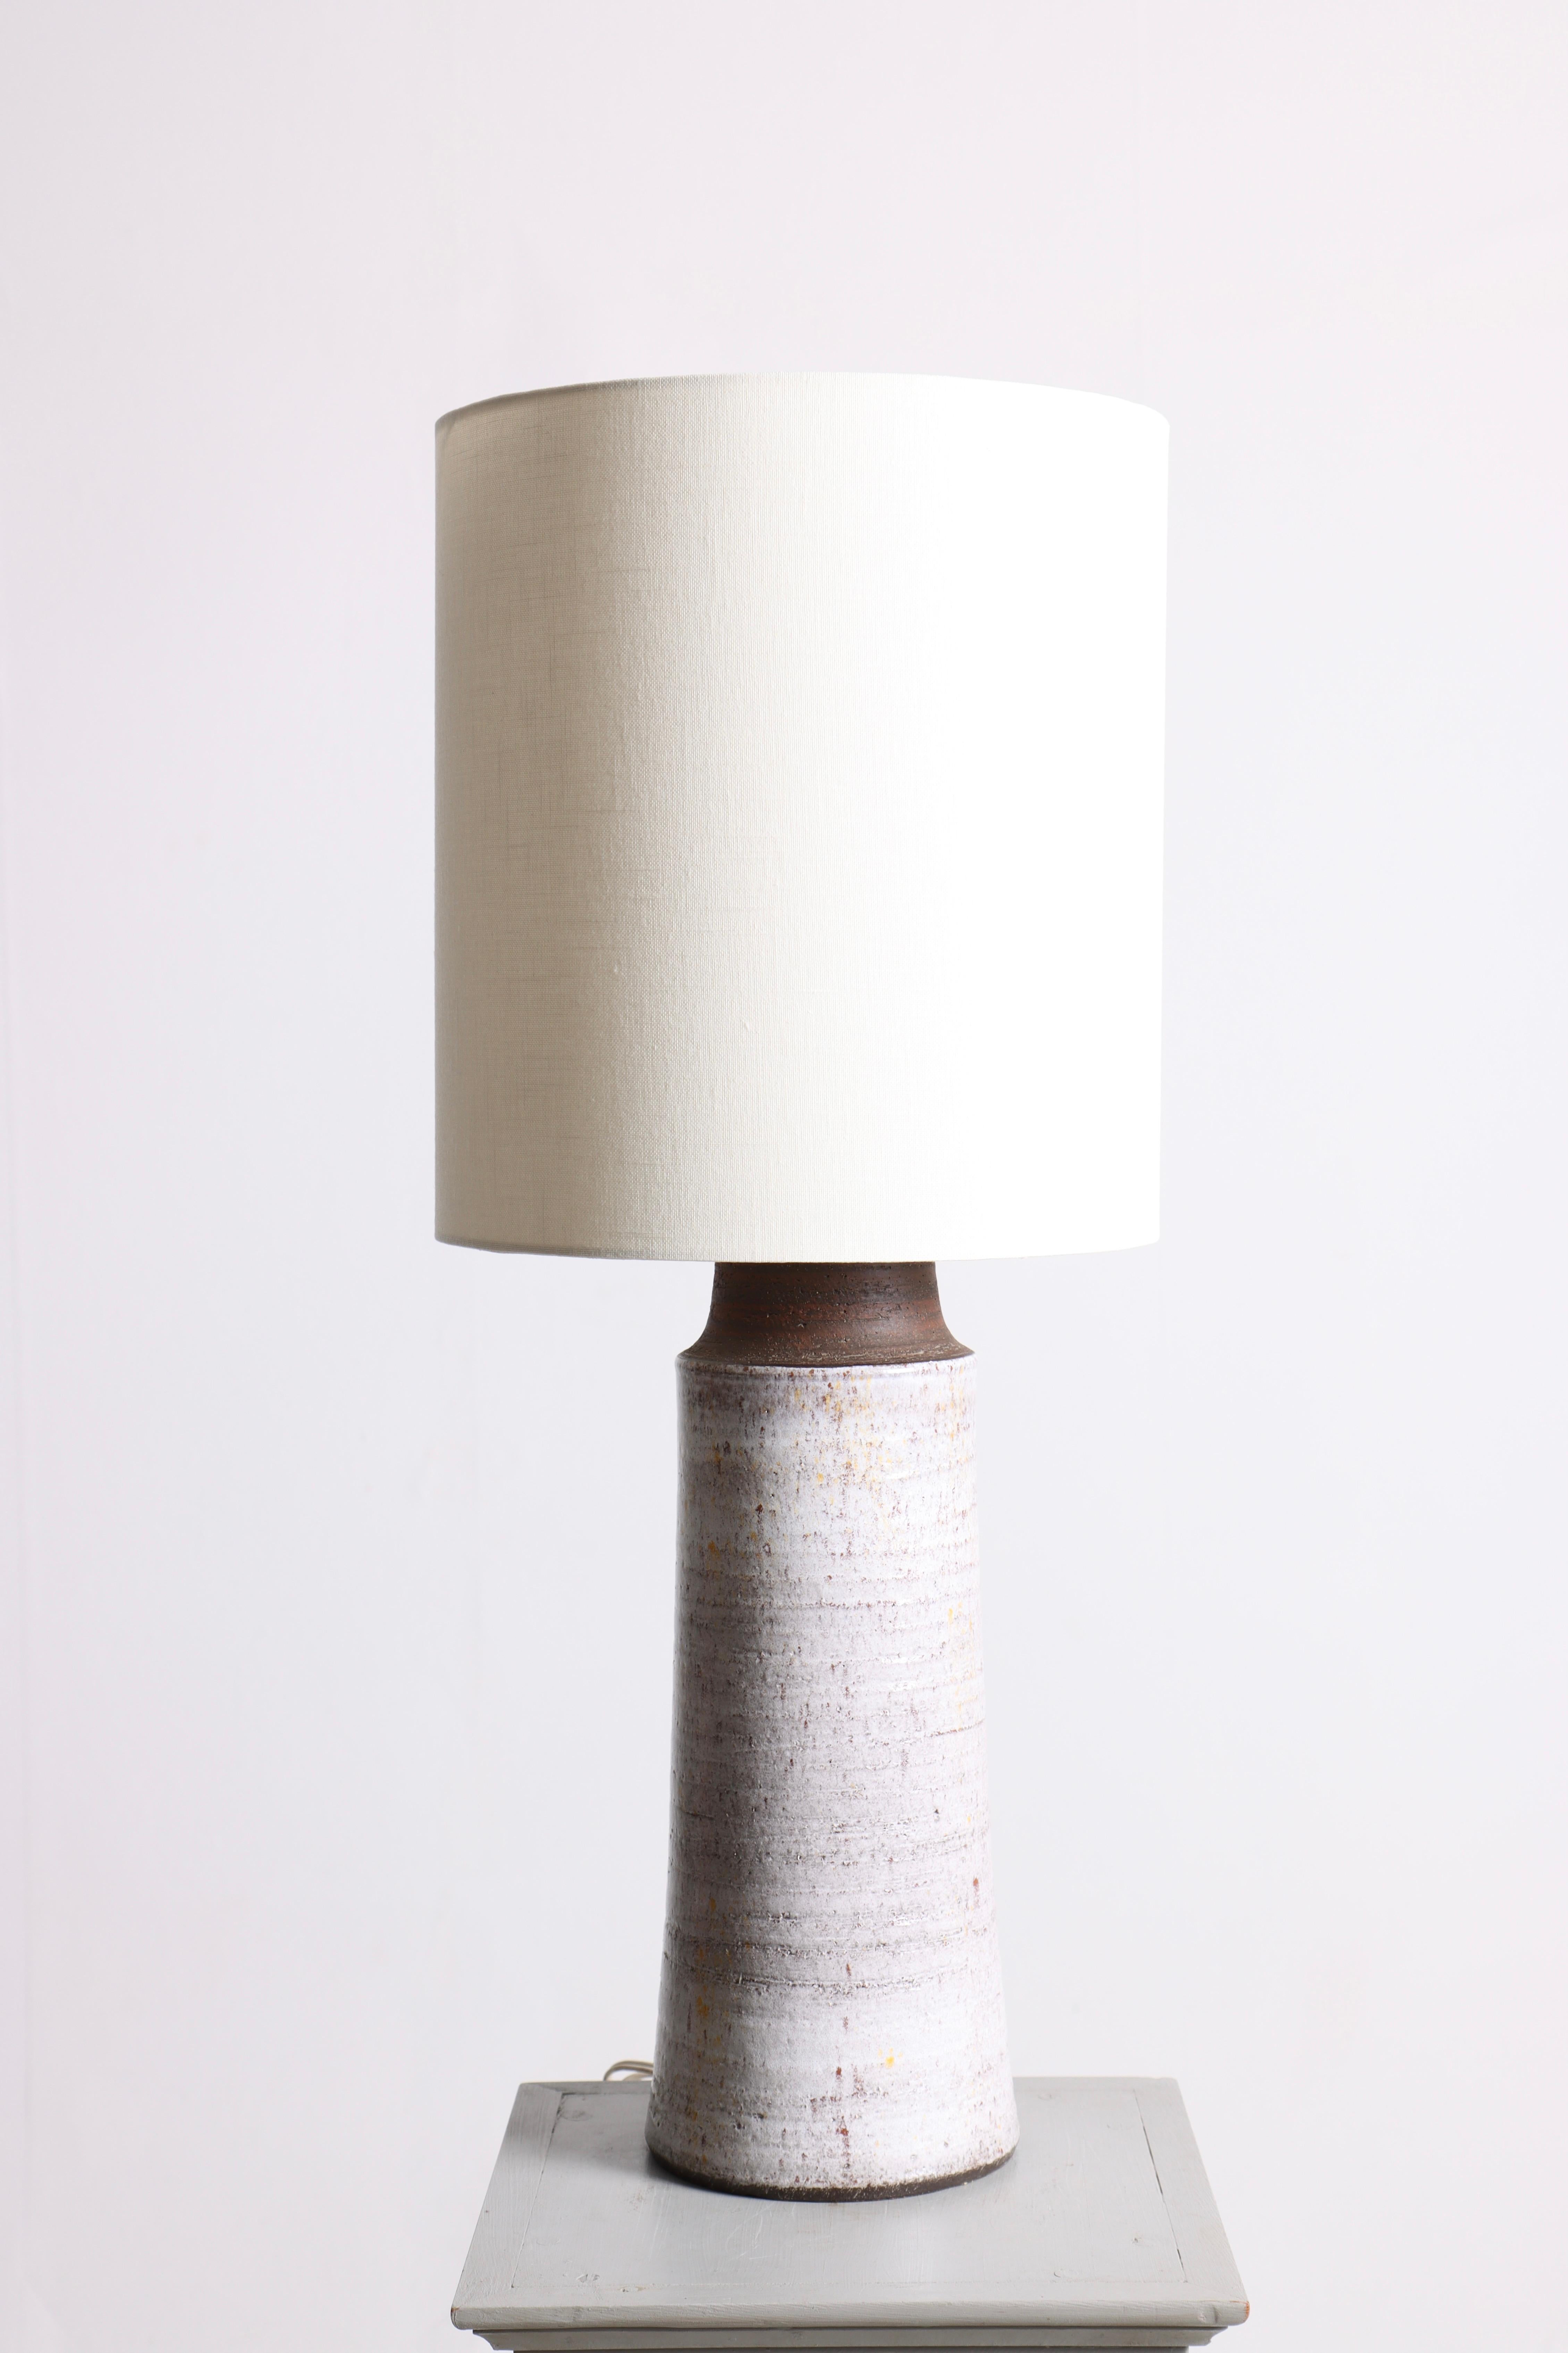 Tischlampe aus Keramik und Lampenschirm aus Stoff. Entworfen und hergestellt in Dänemark in den 1960er Jahren.